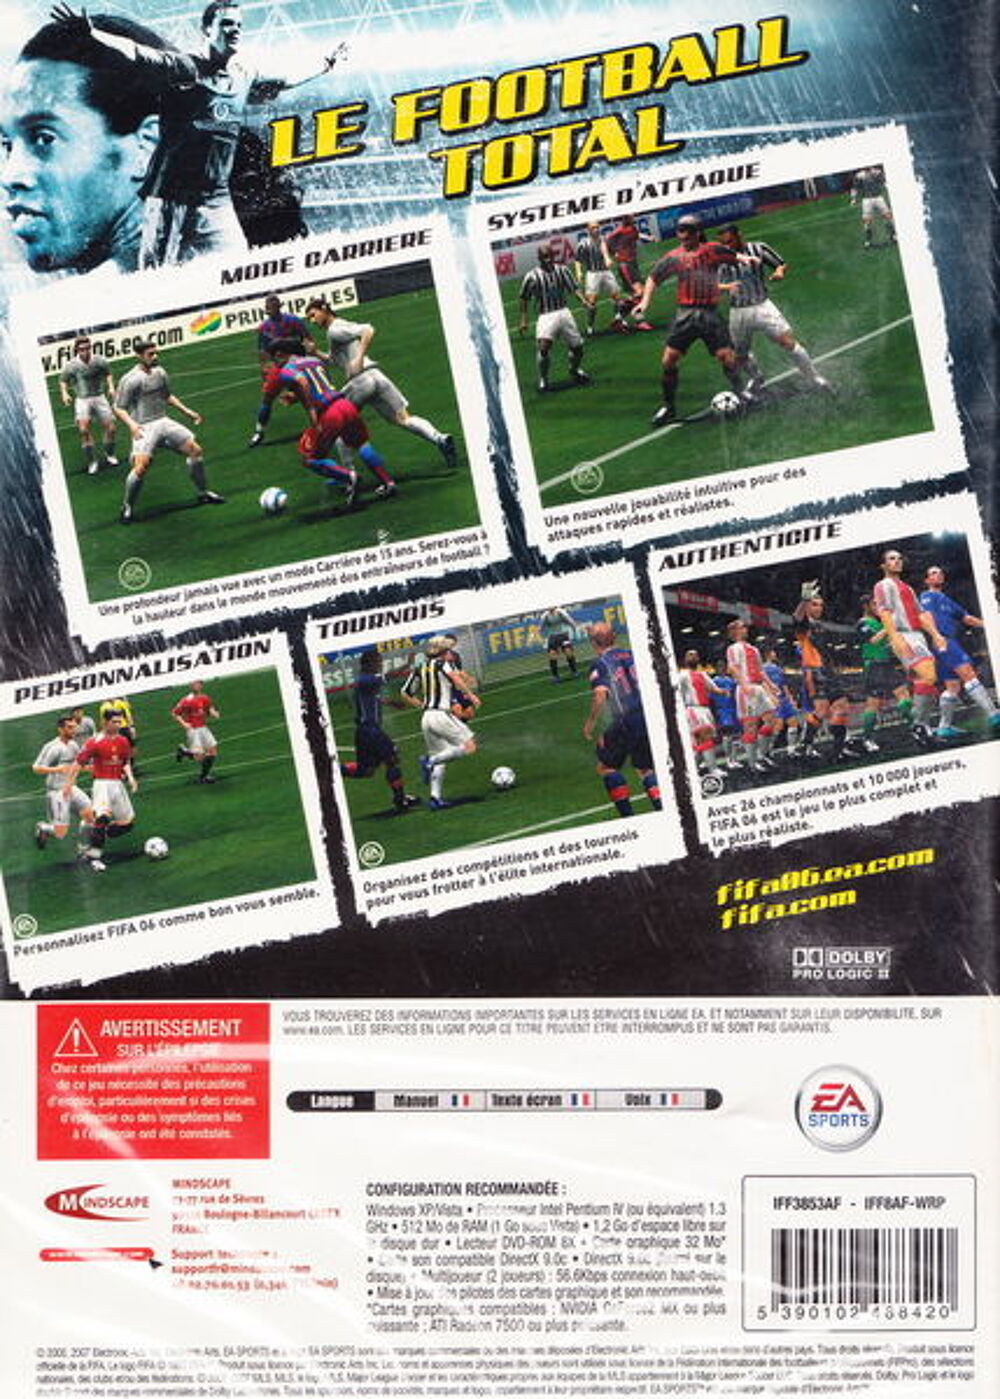 DVD jeu PC FIFA 06 NEUF blister
Consoles et jeux vidos